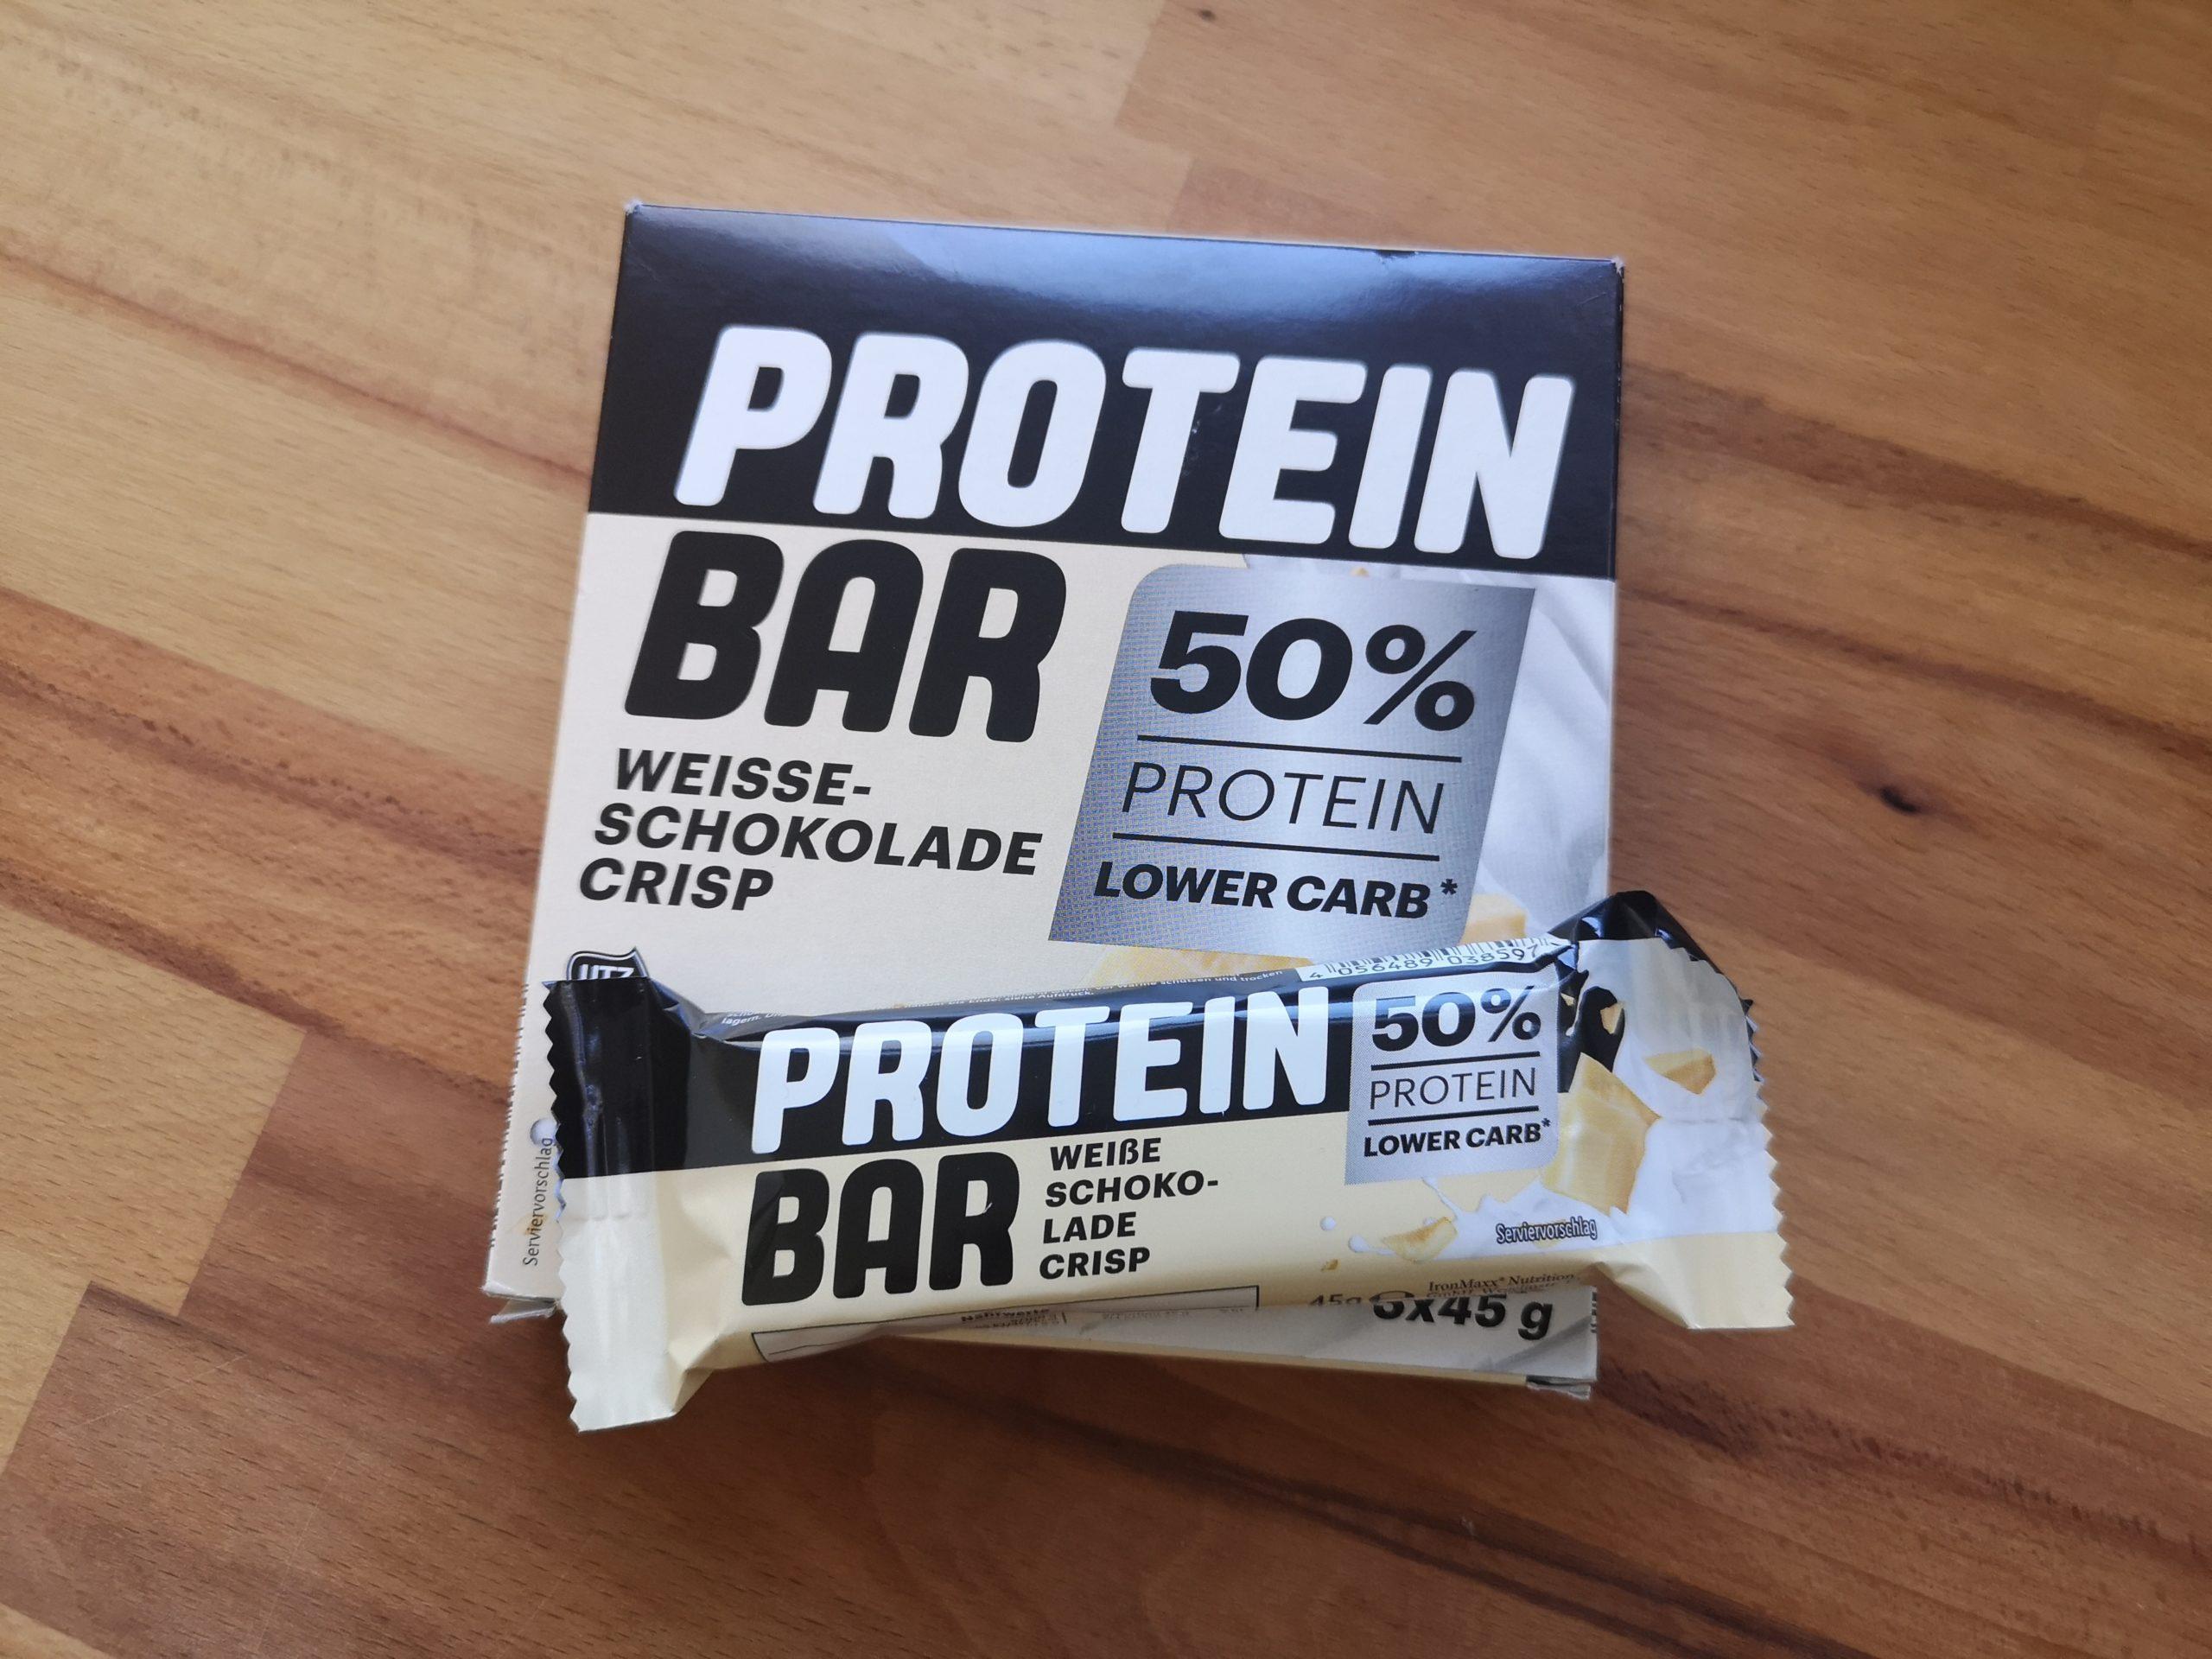 Lidl Protein Bar Weiße Schokolade Crisp im Test